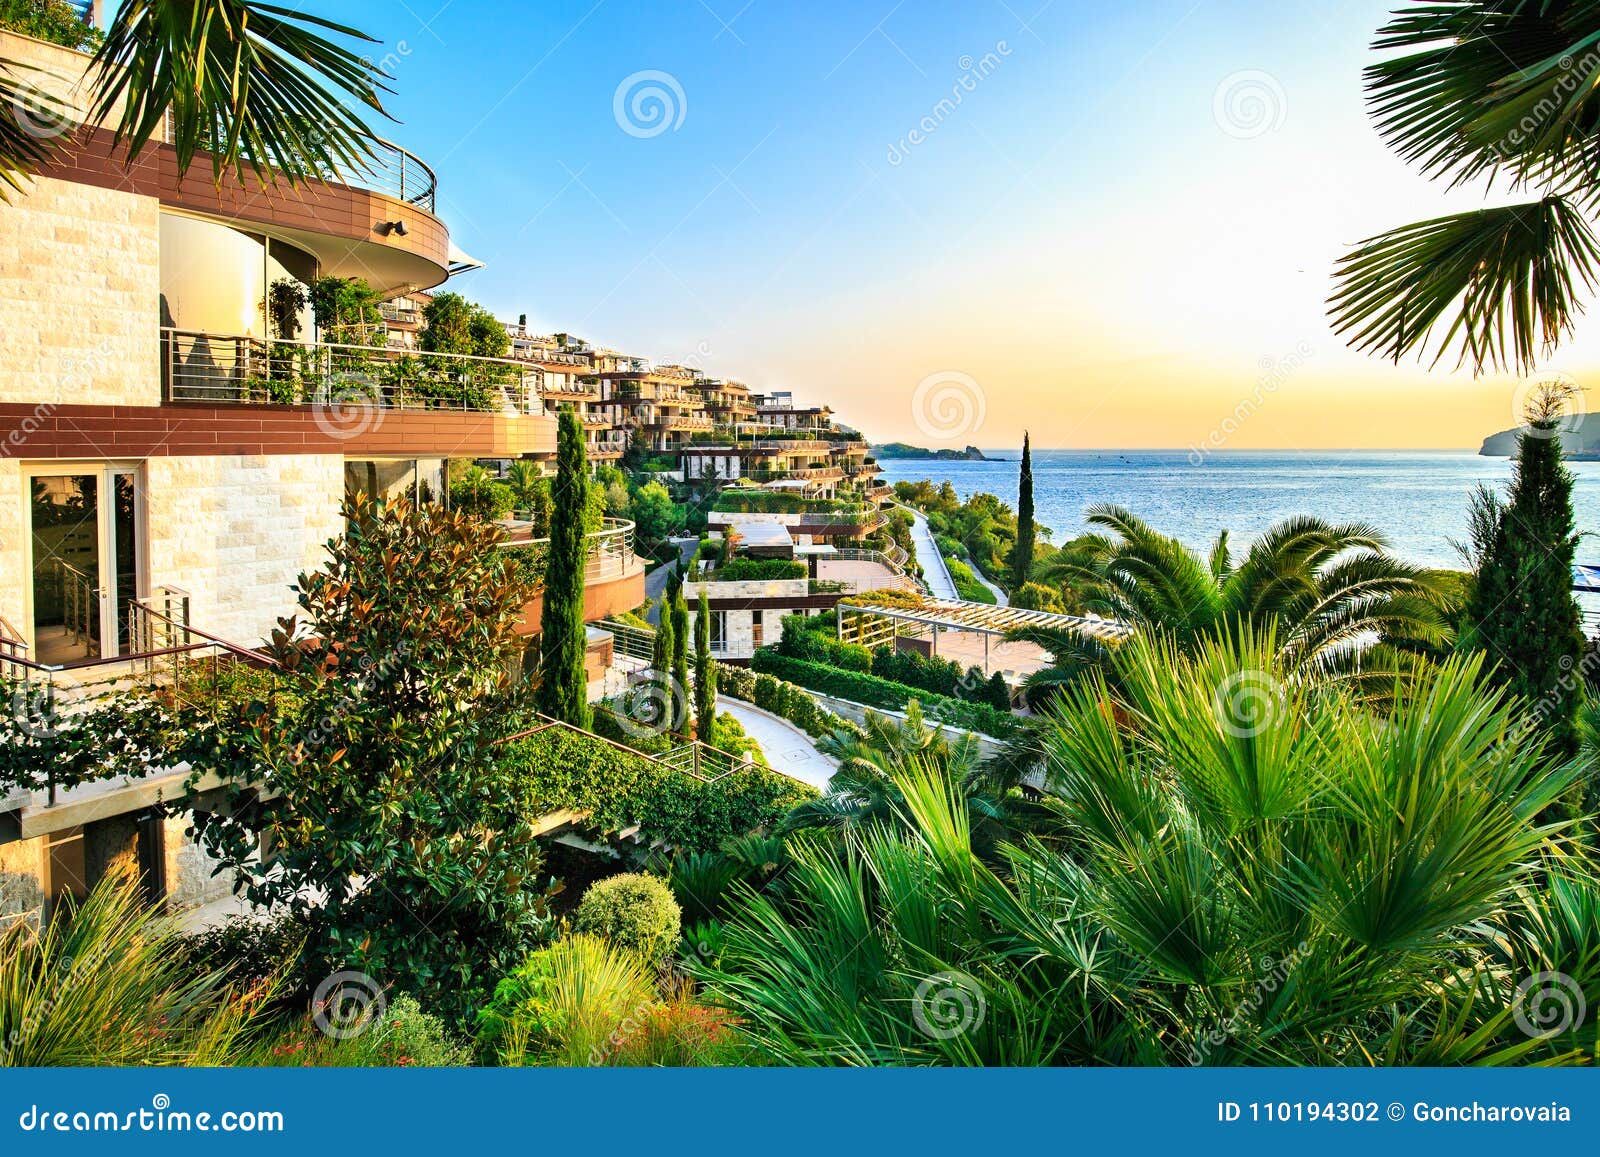 Dukley Gardens Elite Real Estate Along Adriatic Sea Coast Has